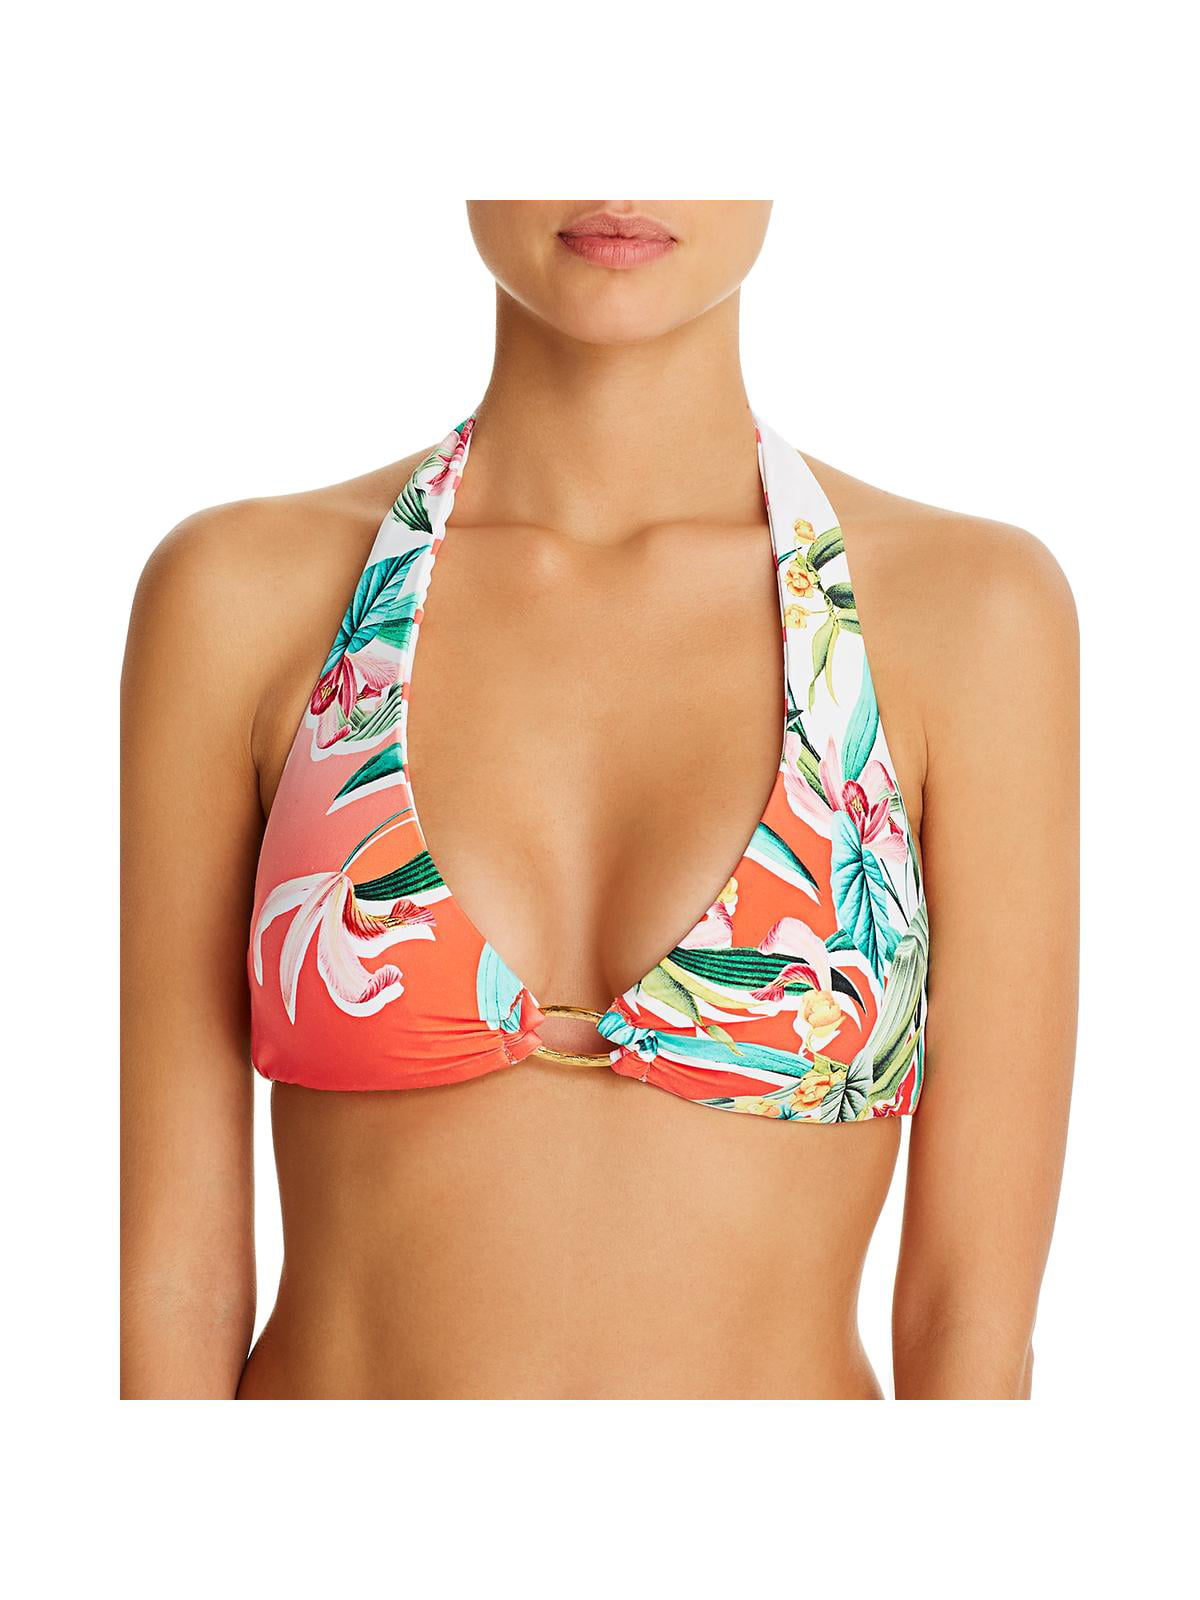 Mae Womens Swimwear Trina Cross Back Printed Bikini Top for A-C cups Brand